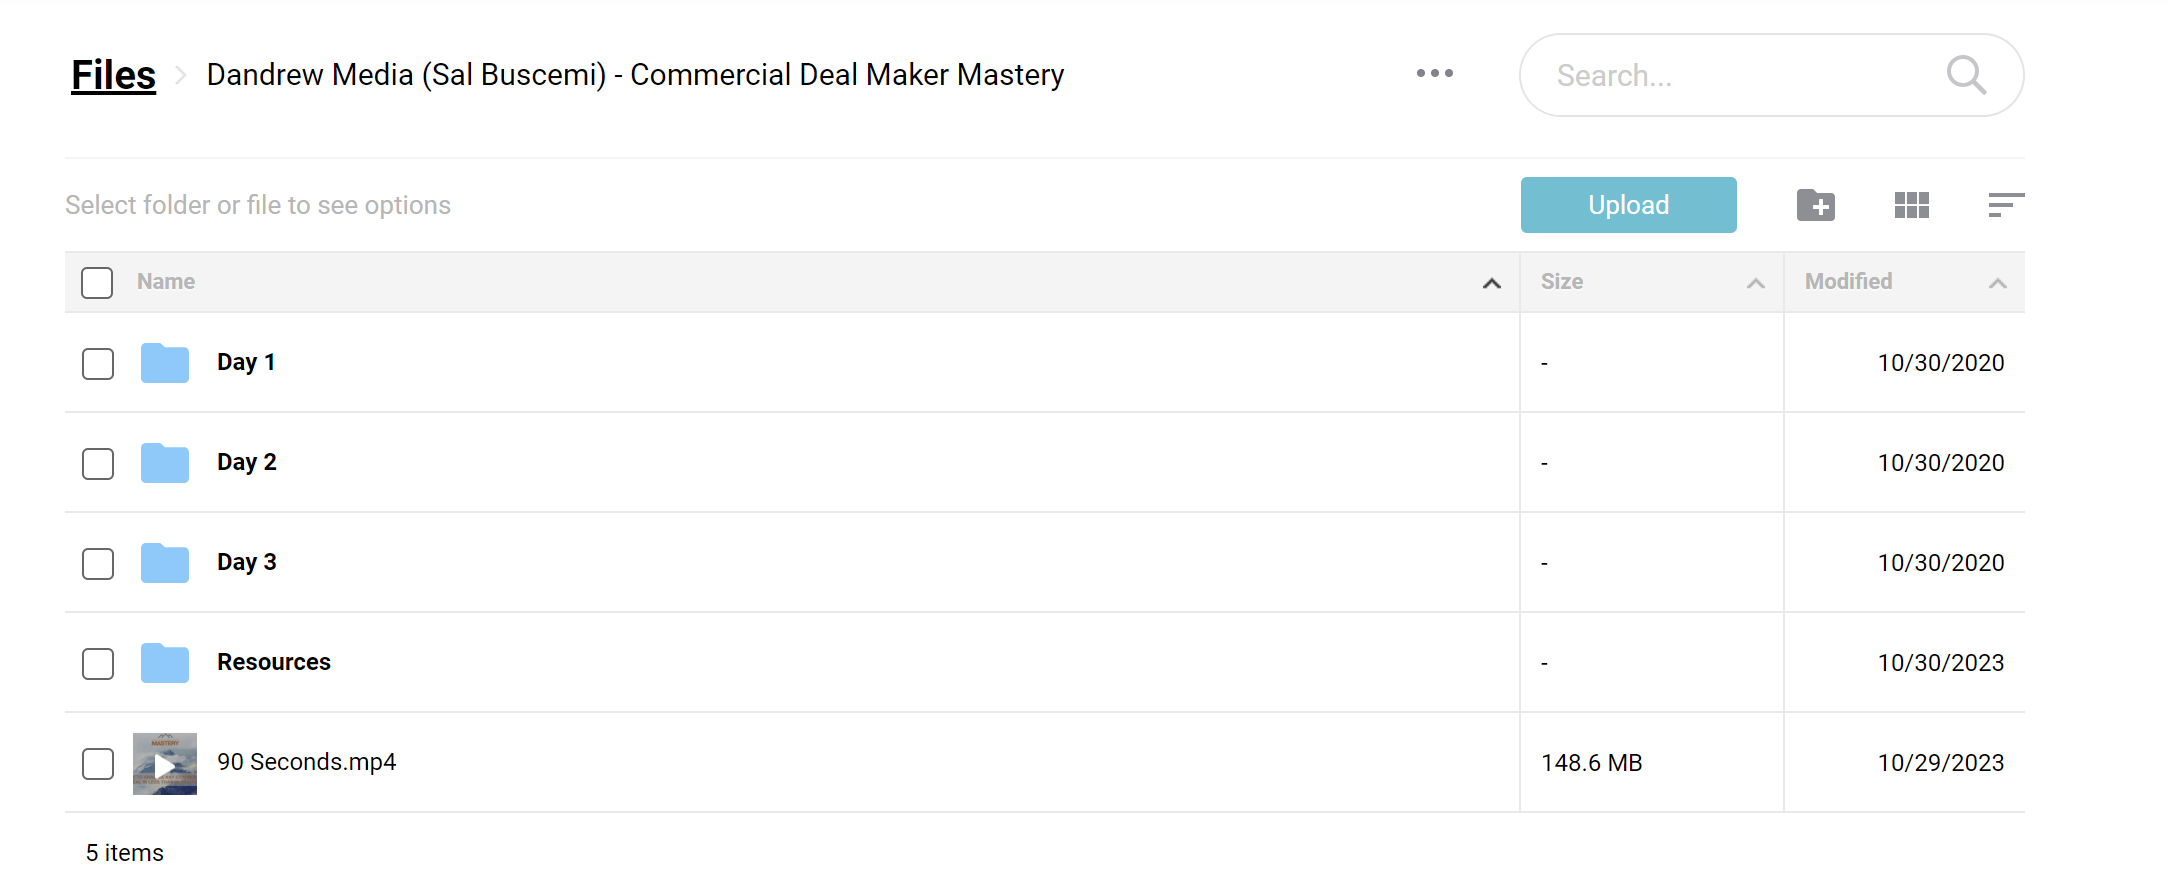 Dandrew Media Commercial Deal Maker Mastery